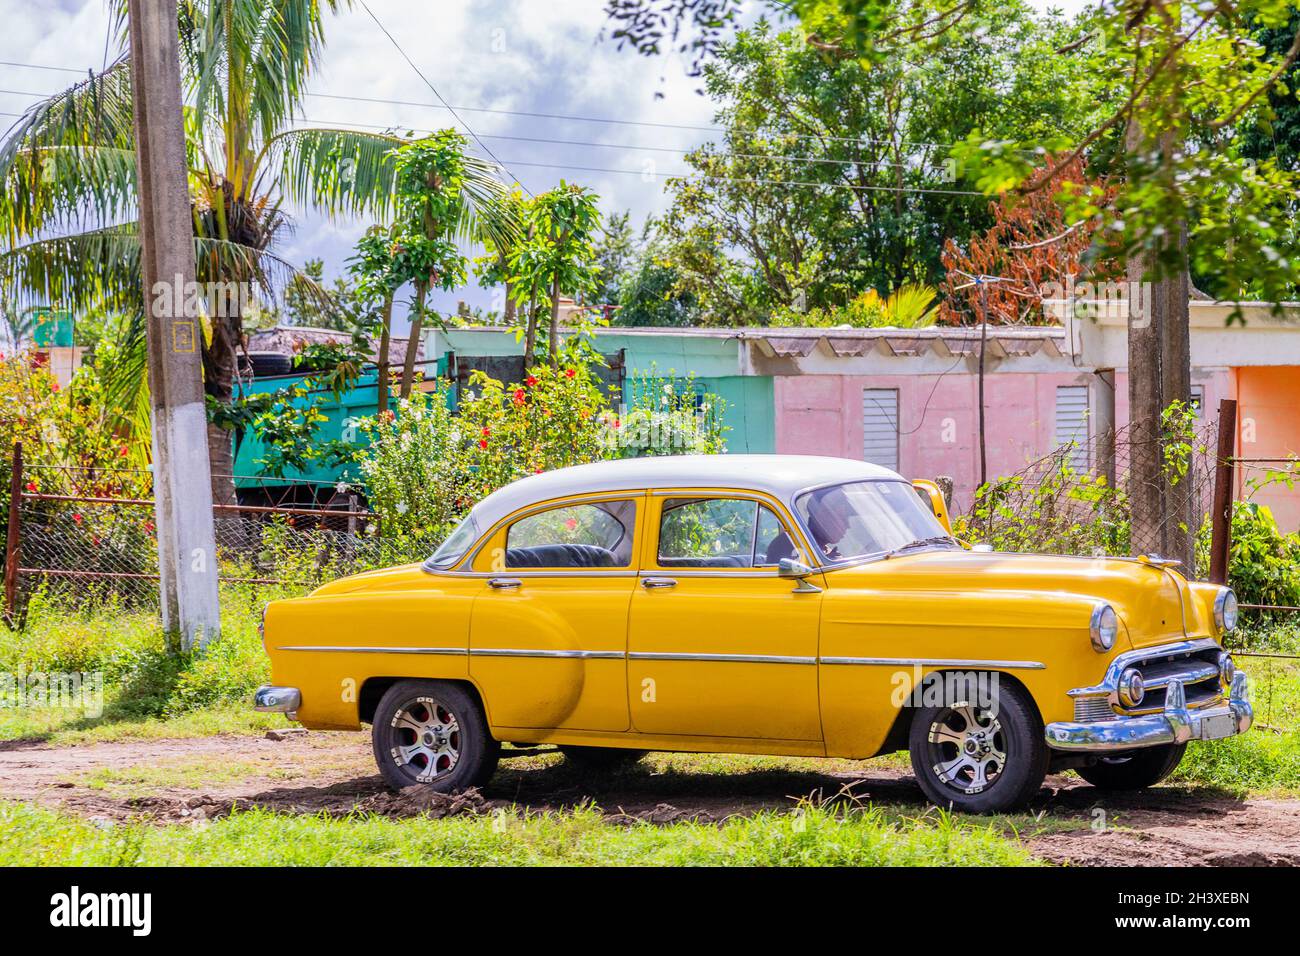 Vieille voiture rétro américaine jaune garée dans la campagne, Ciego de Avila, Cuba Banque D'Images